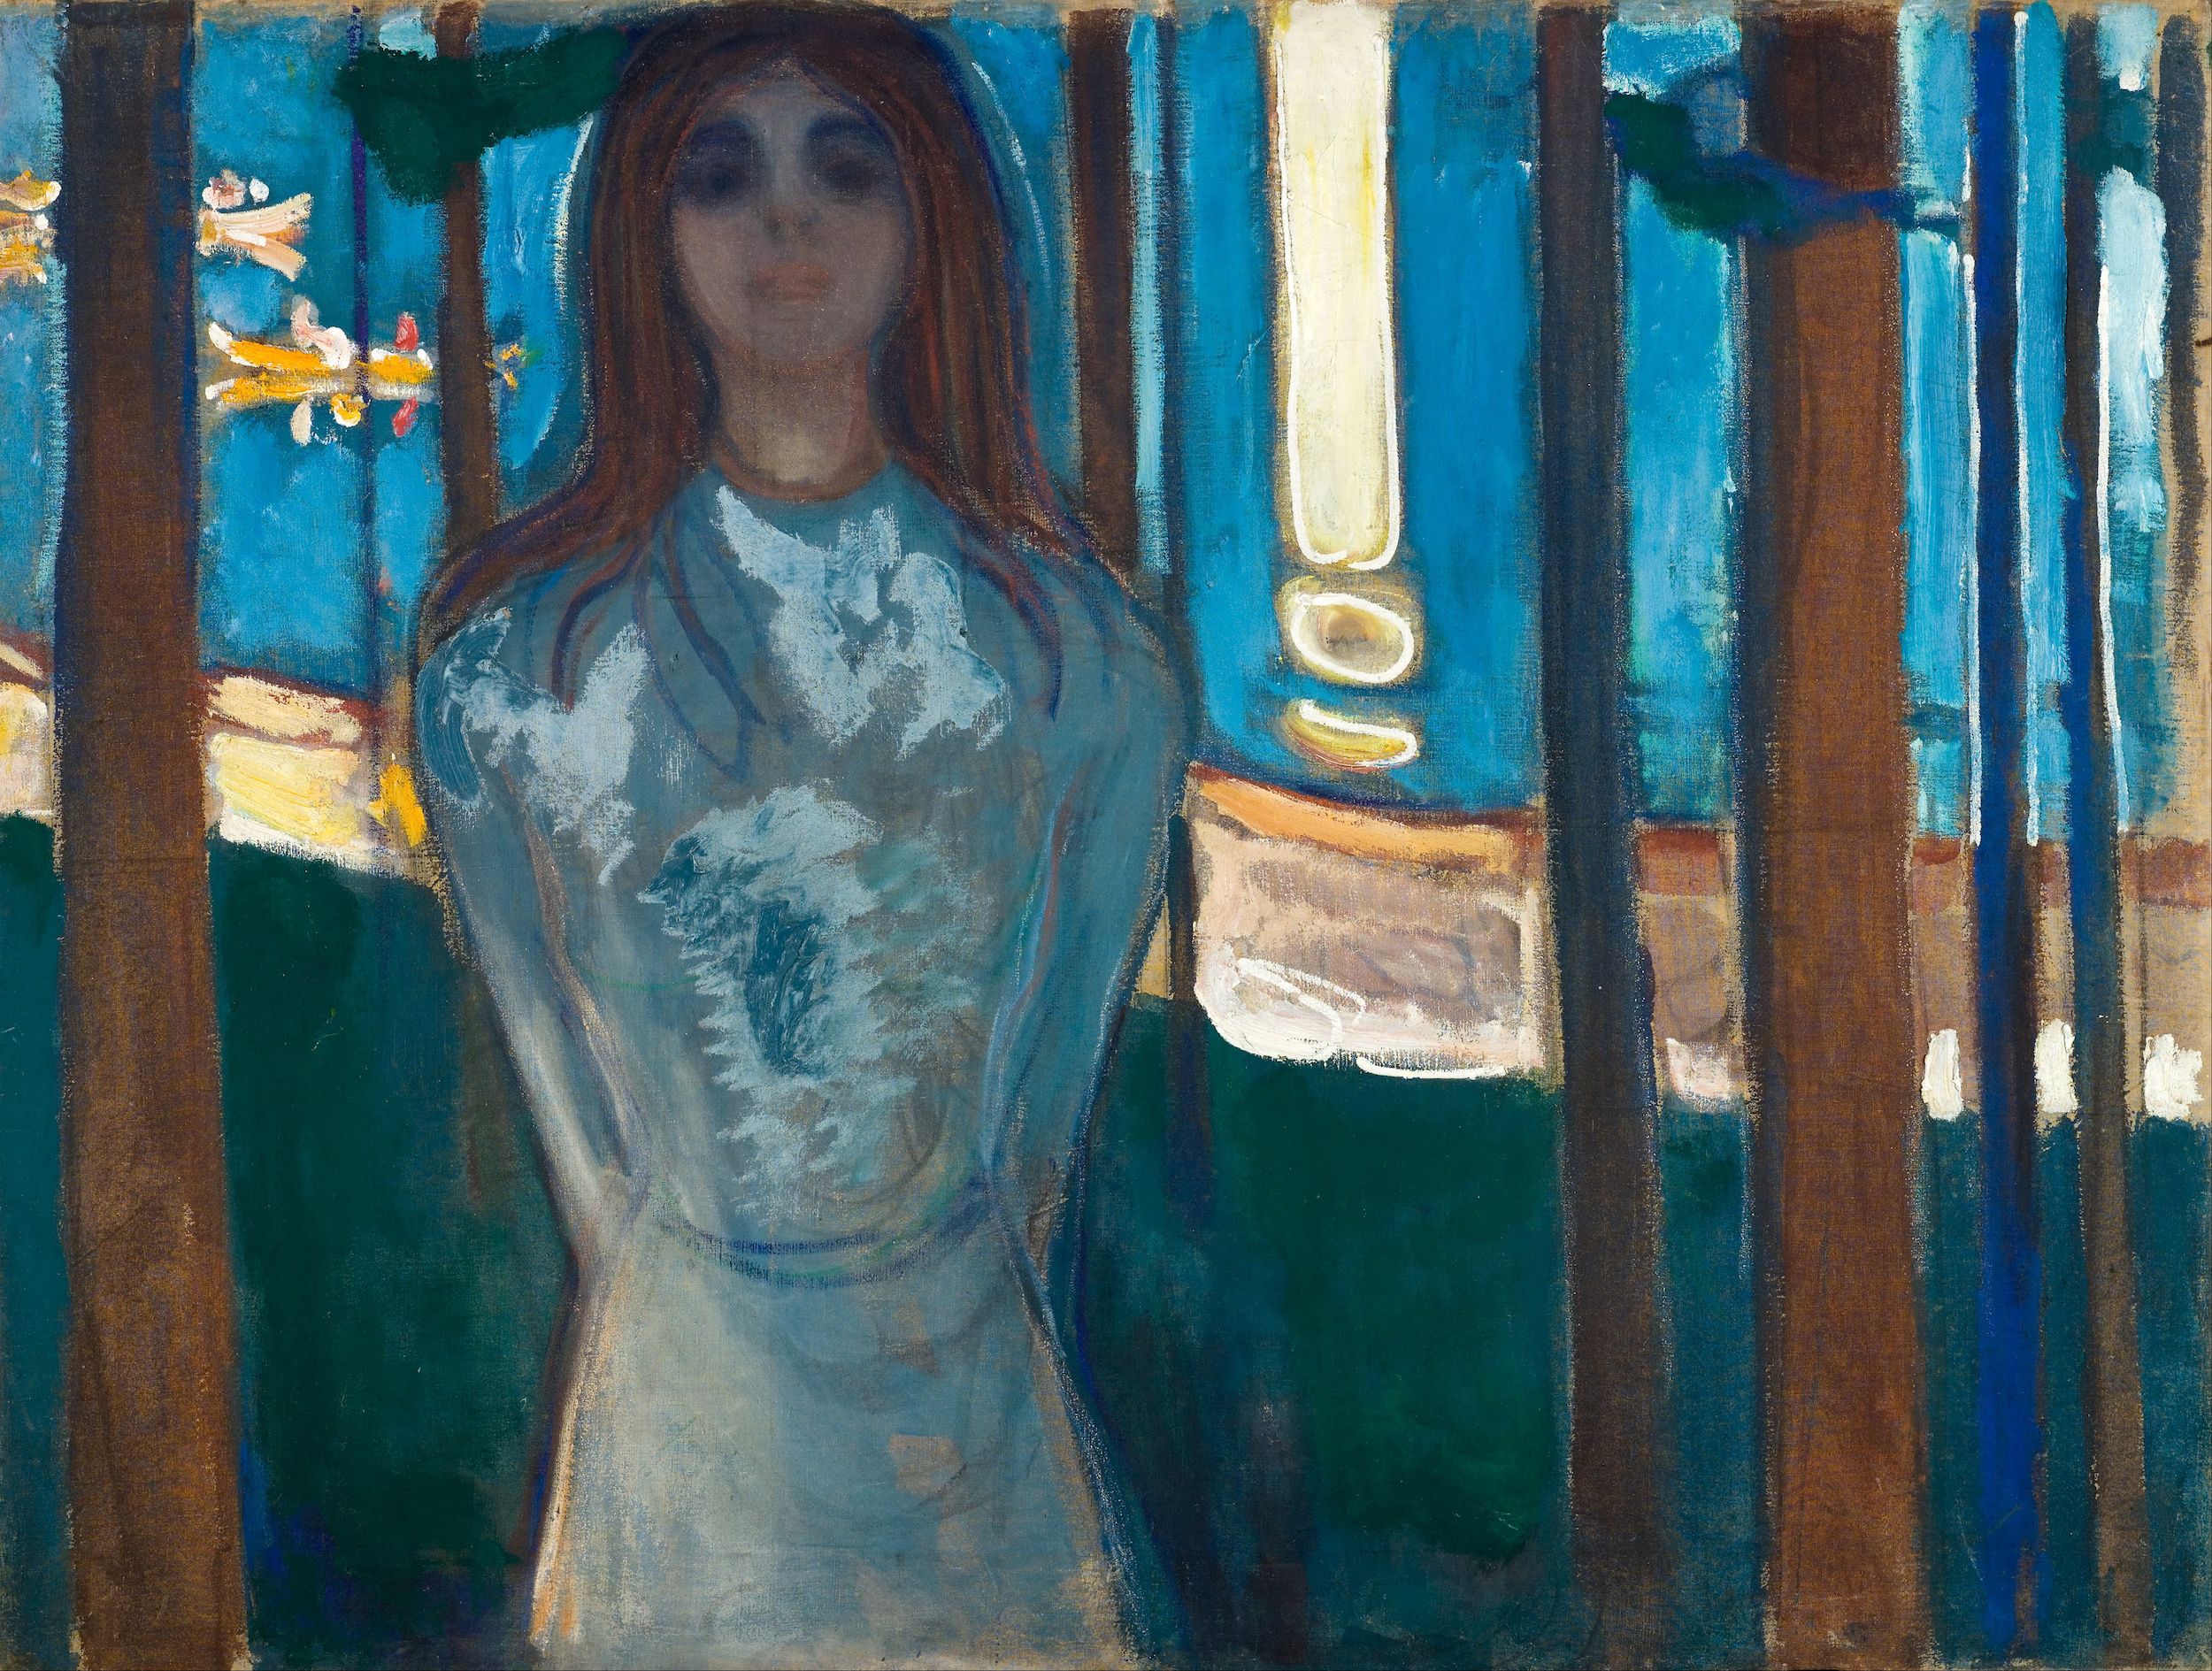 الصوت، ليلة صيفية  by Edvard Munch - ١٨٩٦ - ٩٠ سم x ١١٩  